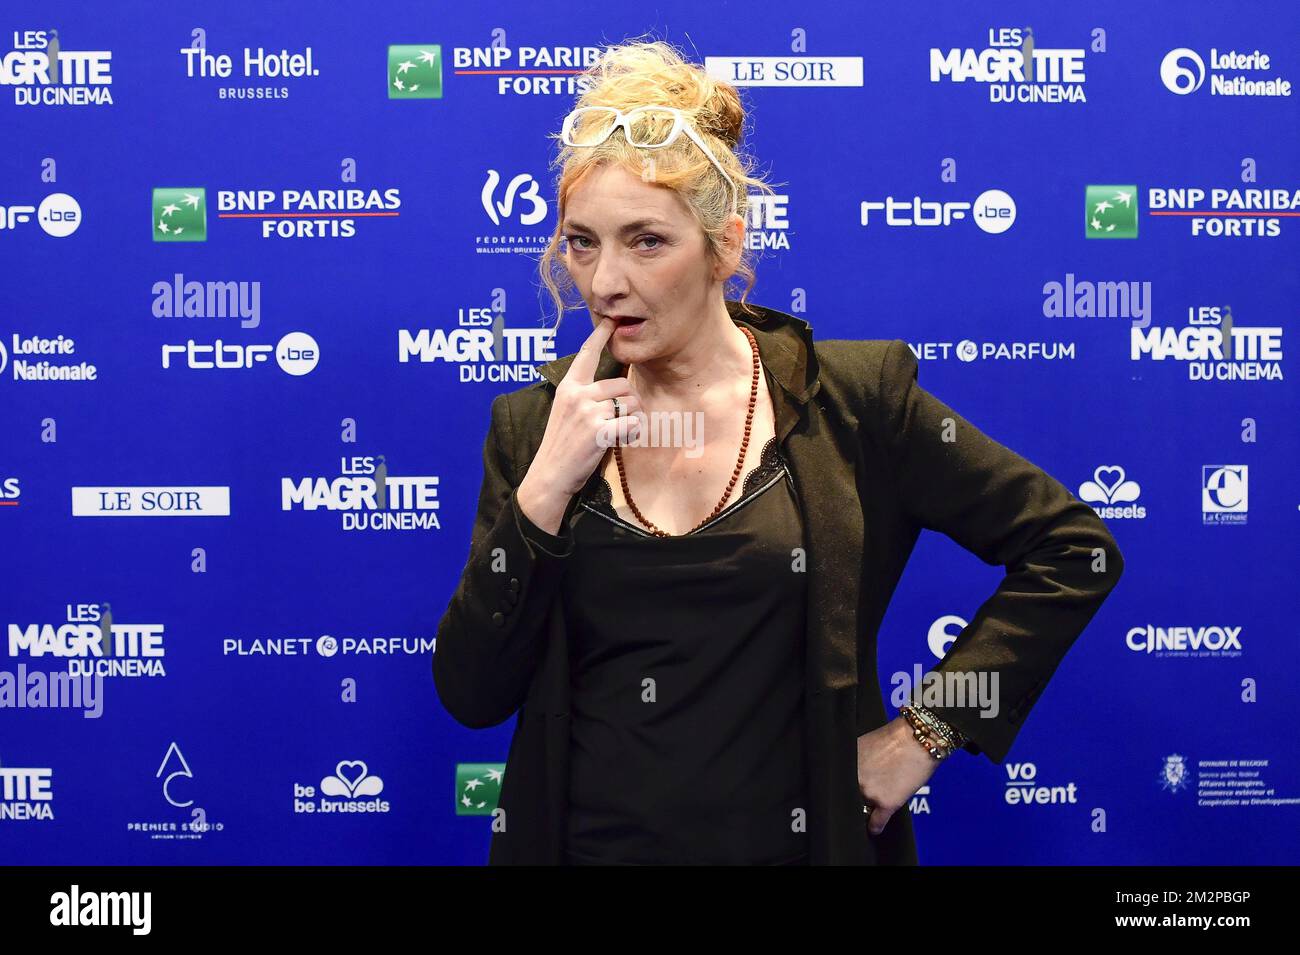 L'actrice Corinne Masiero photographiée lors de l'édition 9th de la cérémonie de remise des prix du film 'Magritte du Cinéma', samedi 02 février 2019, à Bruxelles. Les prix sont remis aux films de producteurs francophones belges. BELGA PHOTO LAURIE DIEFFEMBACQ Banque D'Images